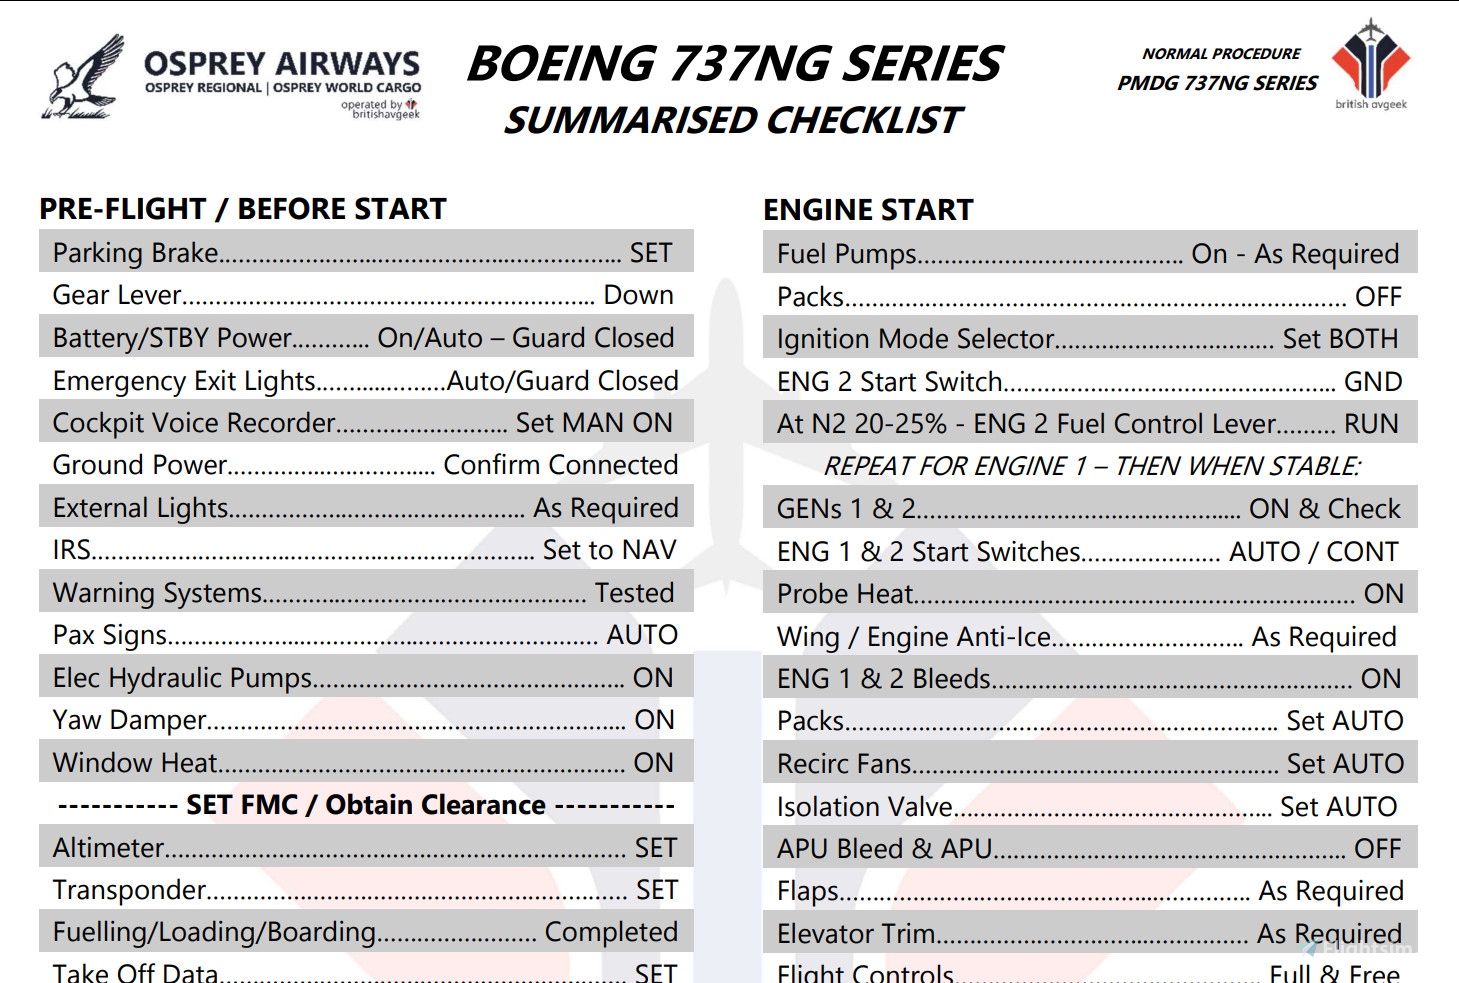 Pmdg 737 800 checklist